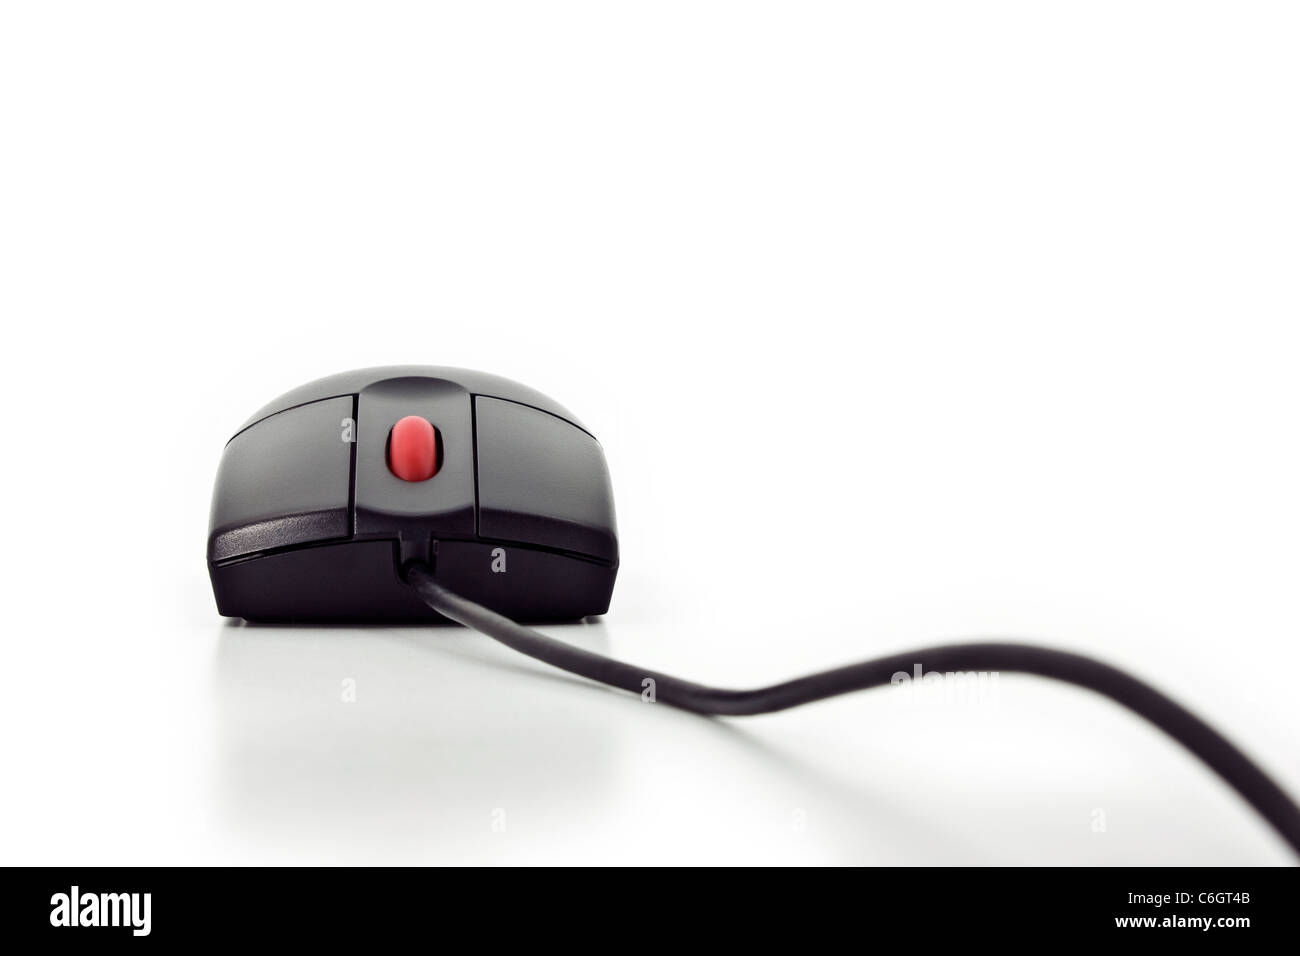 Fermer Vue frontale d'une souris d'ordinateur noir avec un bouton de la roue rouge isolated on white Banque D'Images